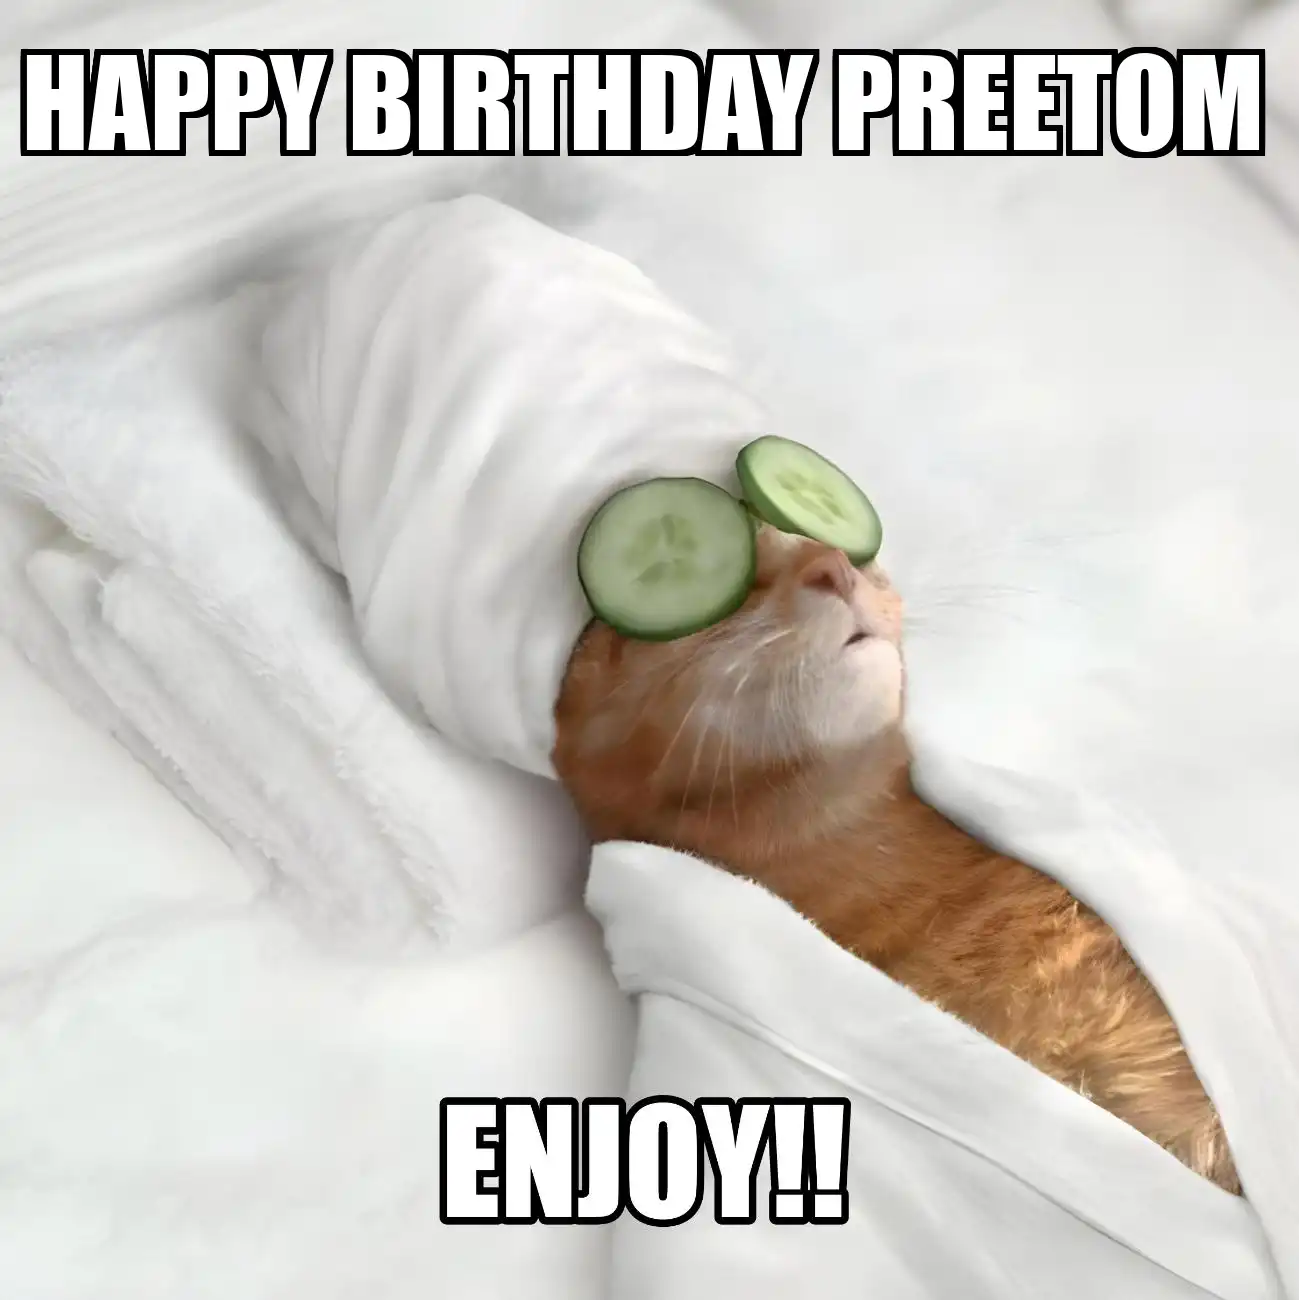 Happy Birthday Preetom Enjoy Cat Meme